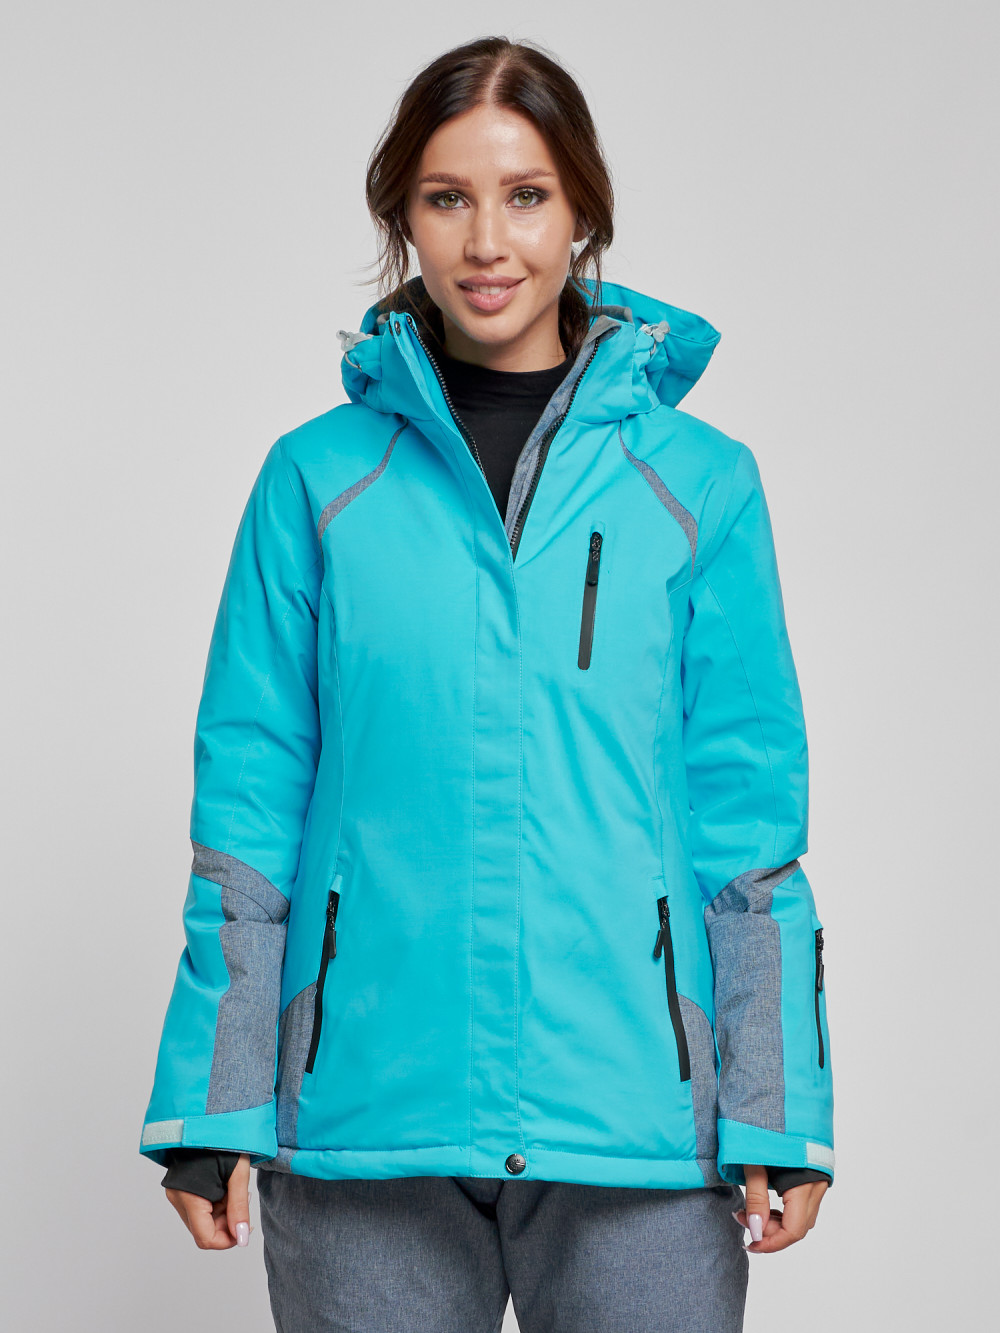 Купить оптом Горнолыжная куртка женская зимняя голубого цвета 2316Gl в Екатеринбурге